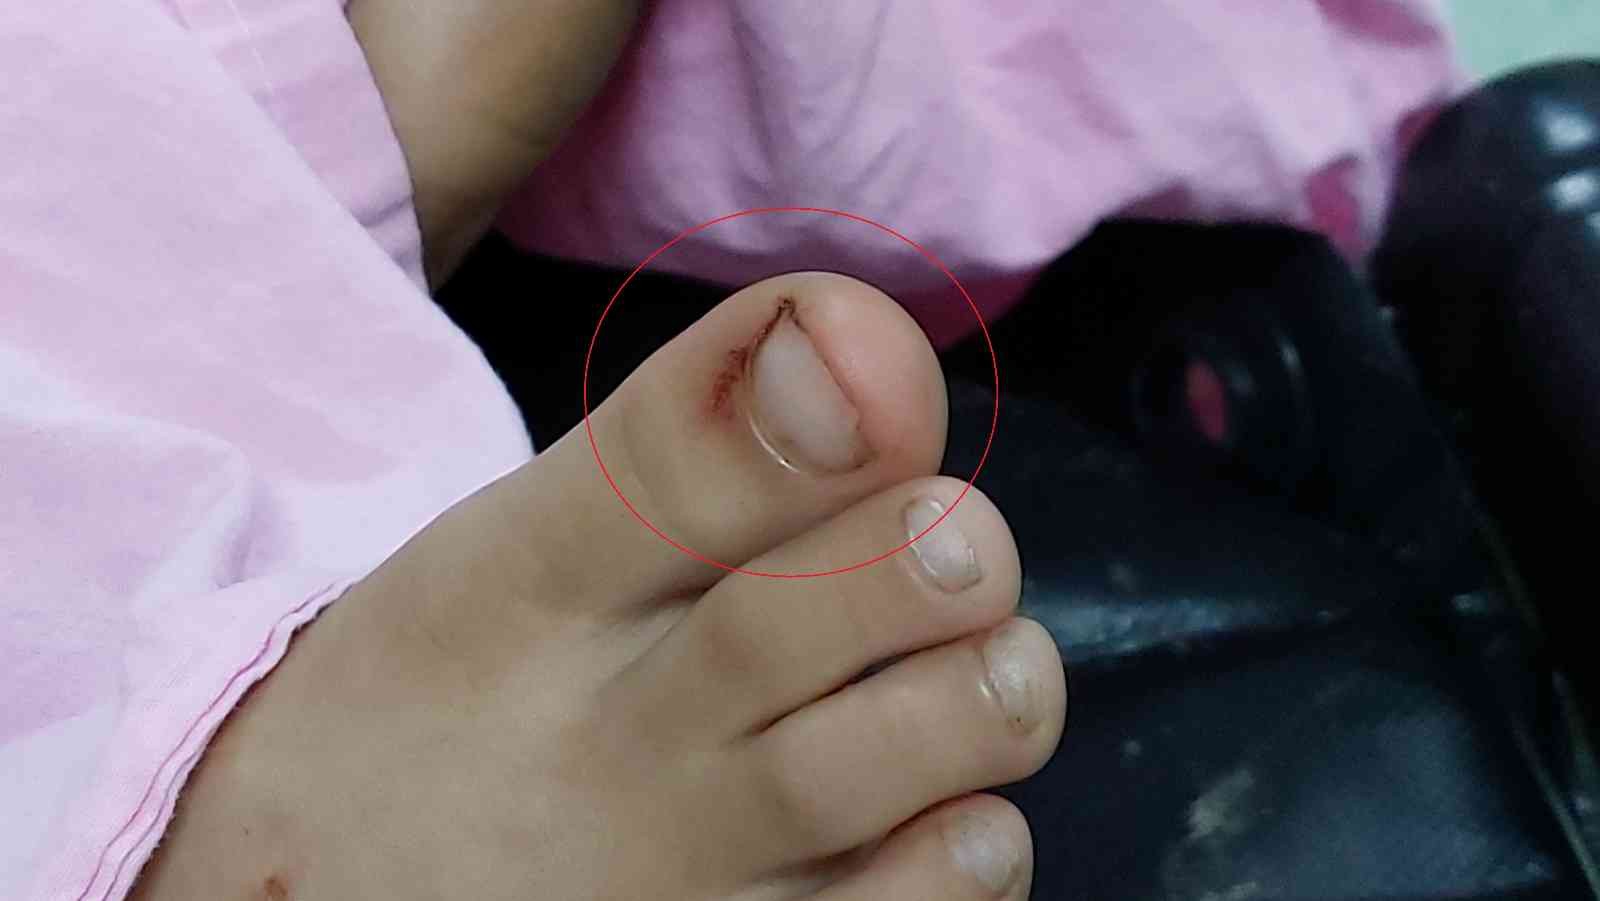 Ayak parmağını yılan sokan 7 yaşındaki çocuk hastanelik oldu
